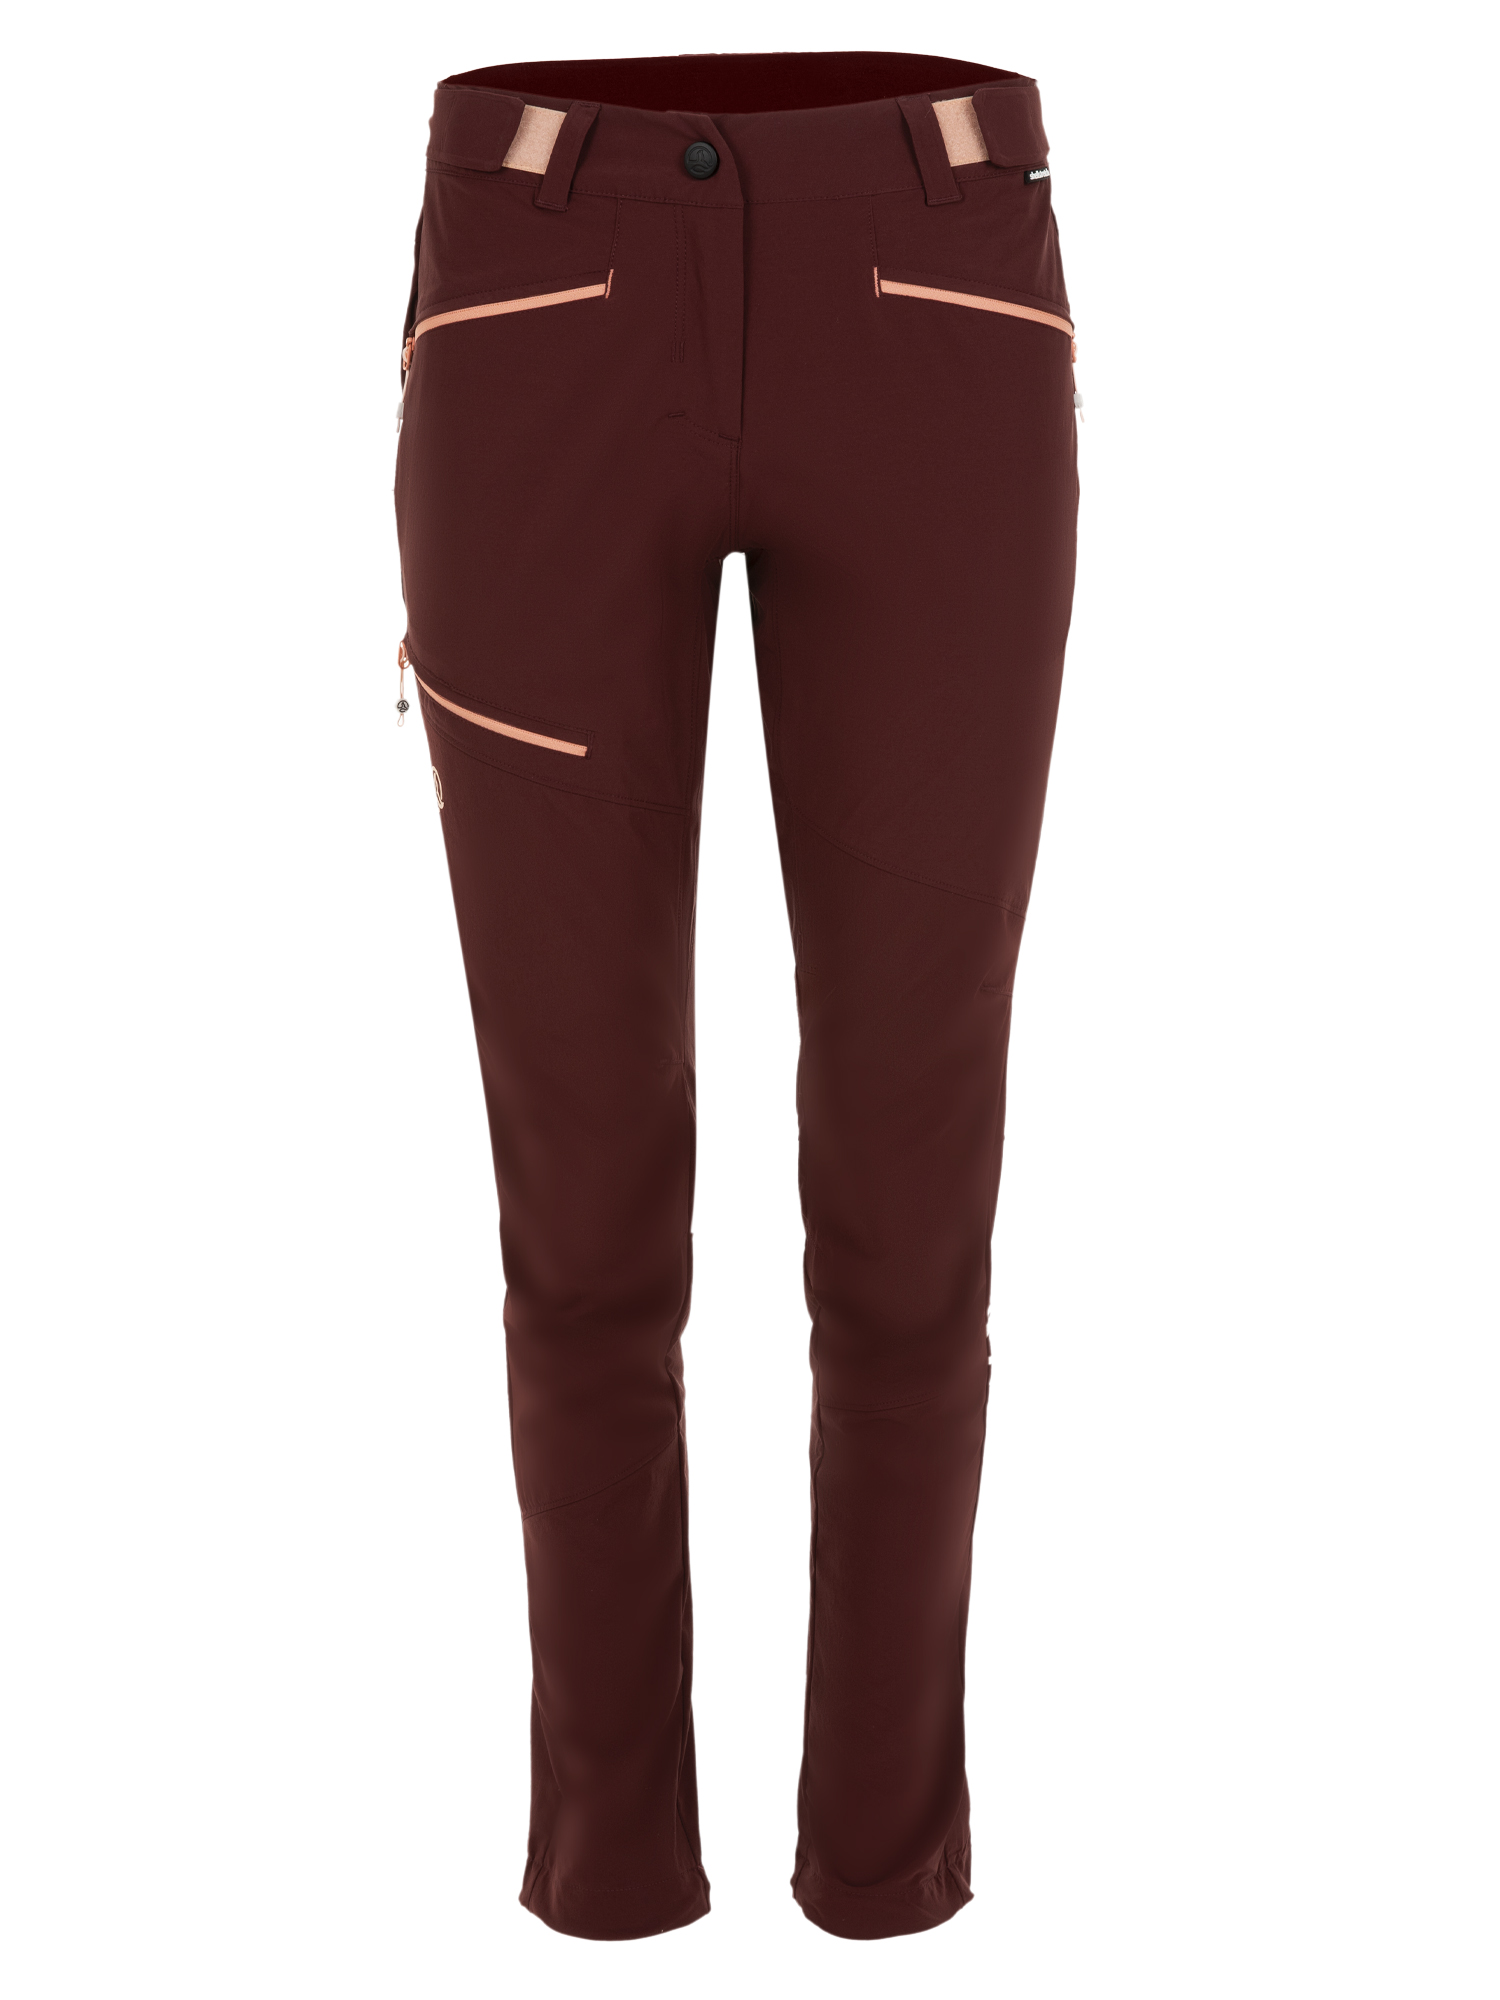 Спортивные брюки женские Ternua Rotar Pt W бордовые S